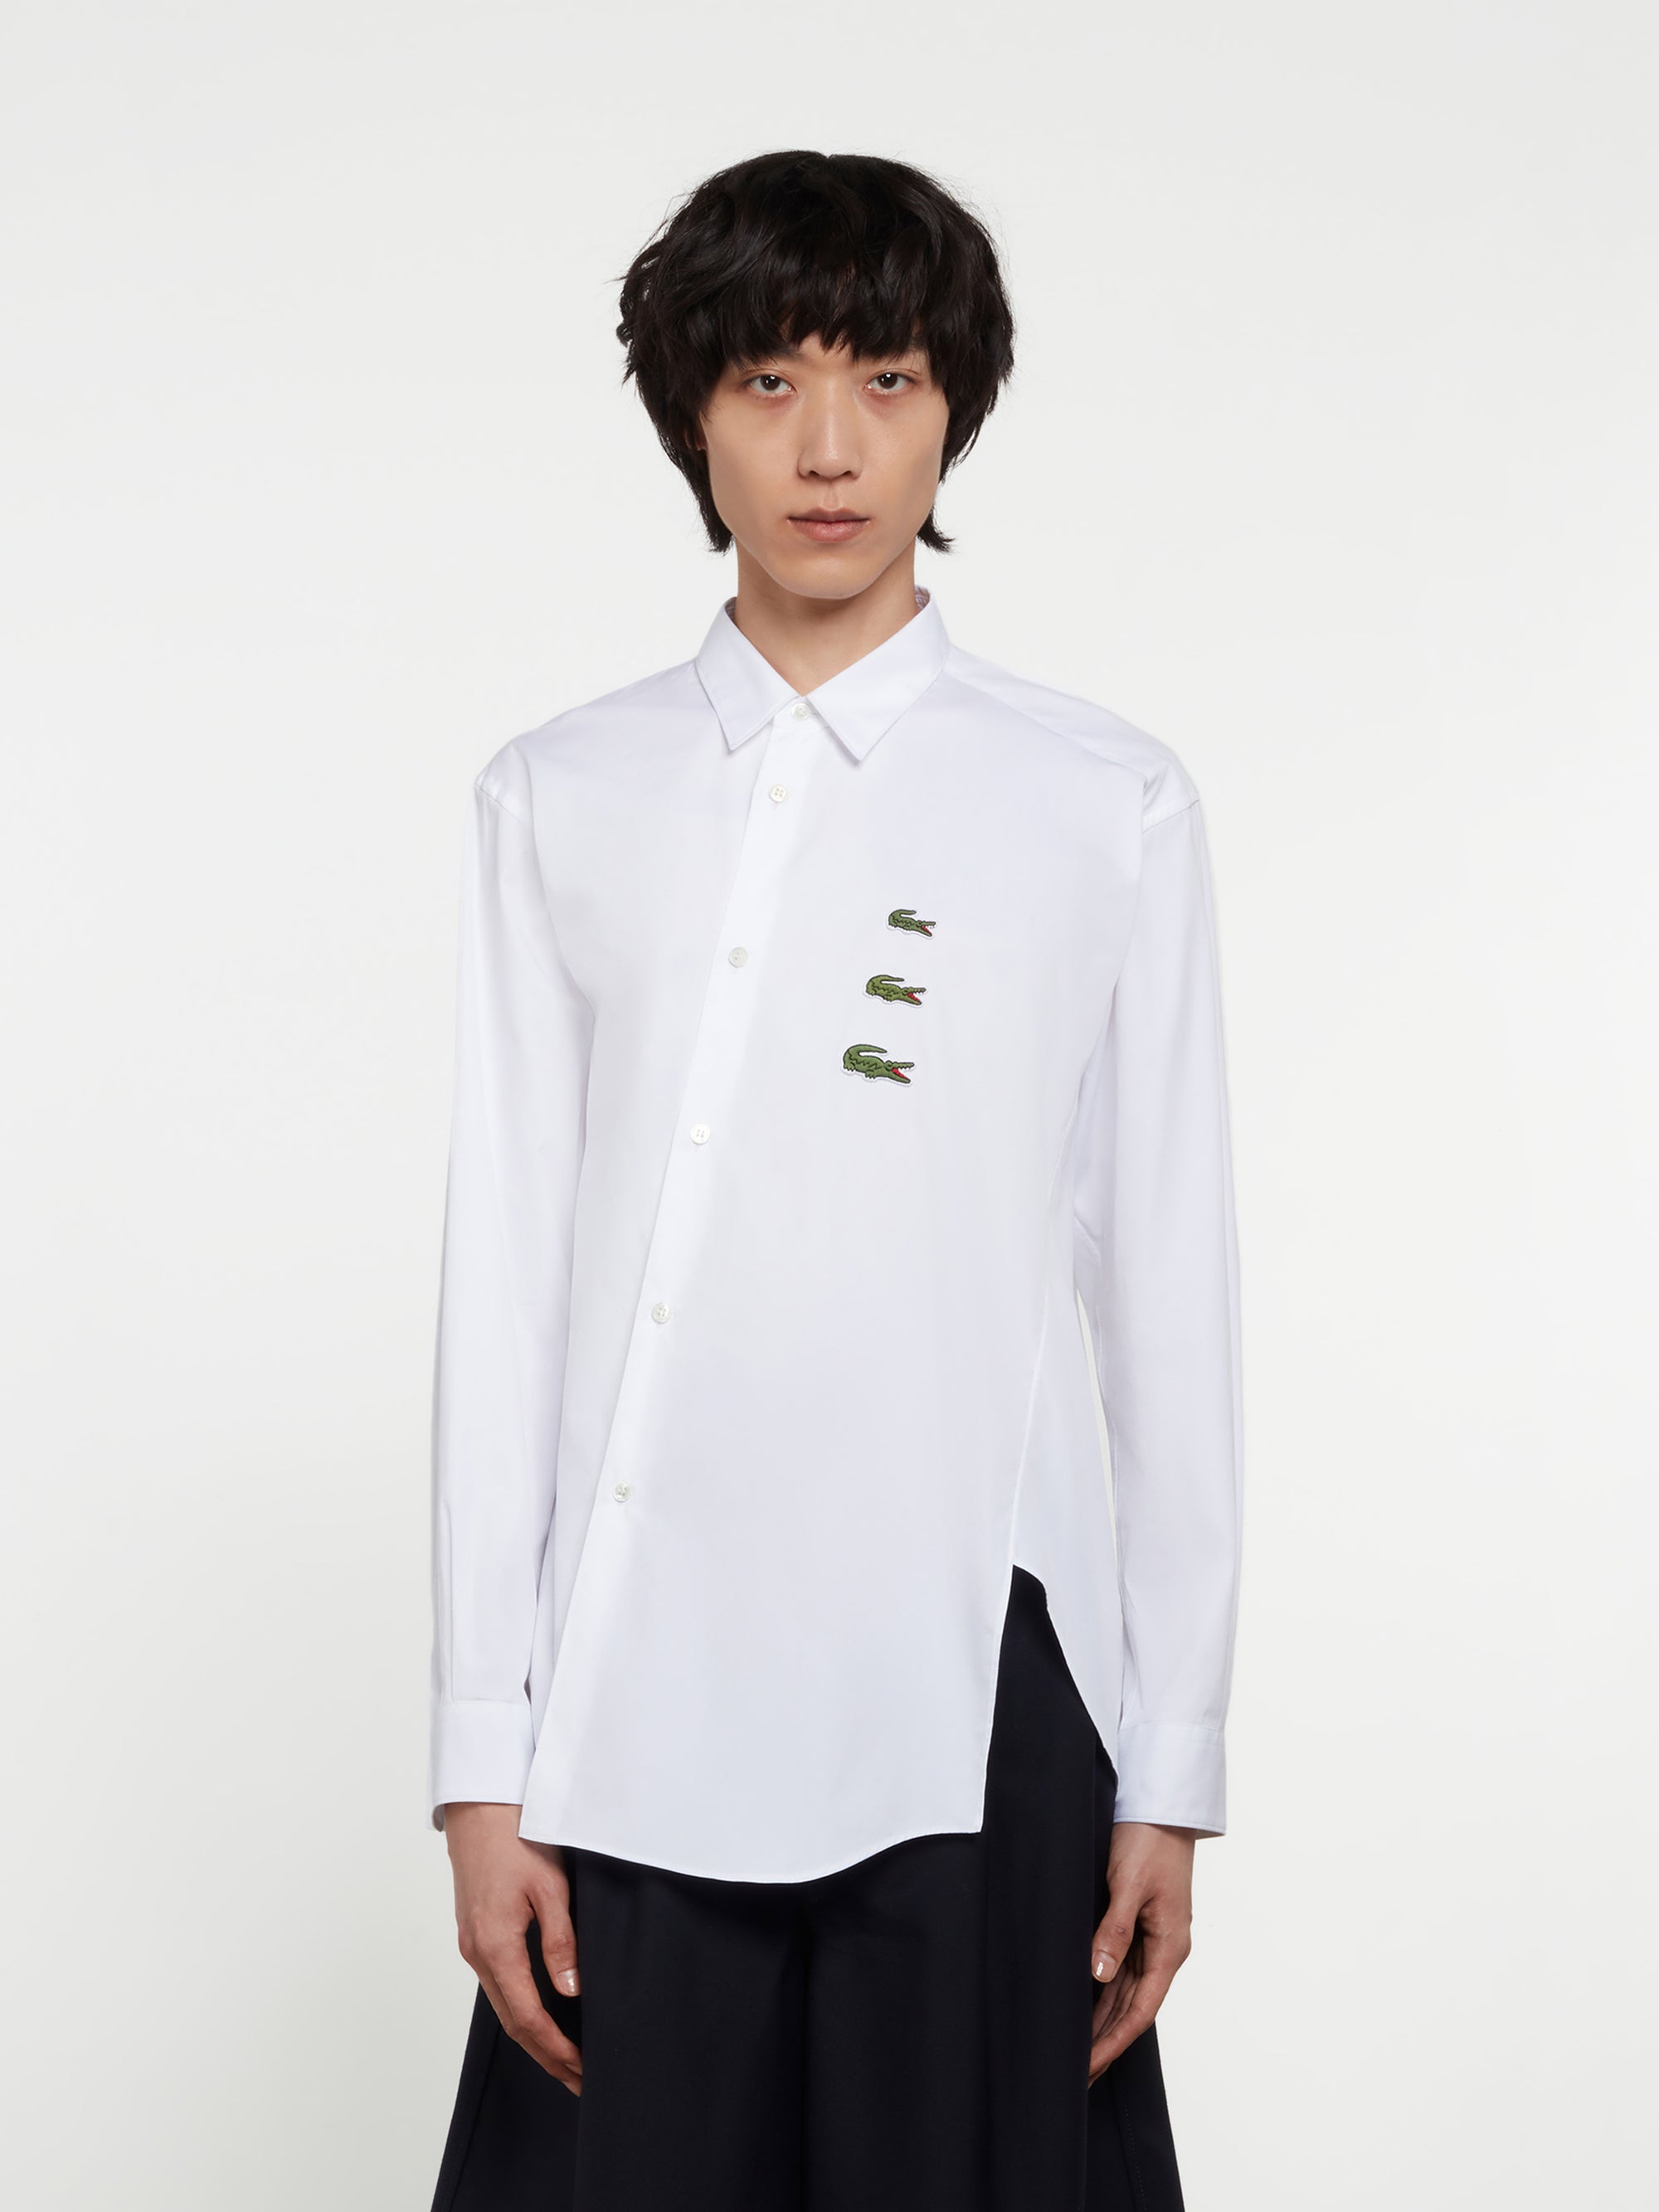 CDG Shirt - Lacoste Men’s Asymmetric Shirt - (White) view 1